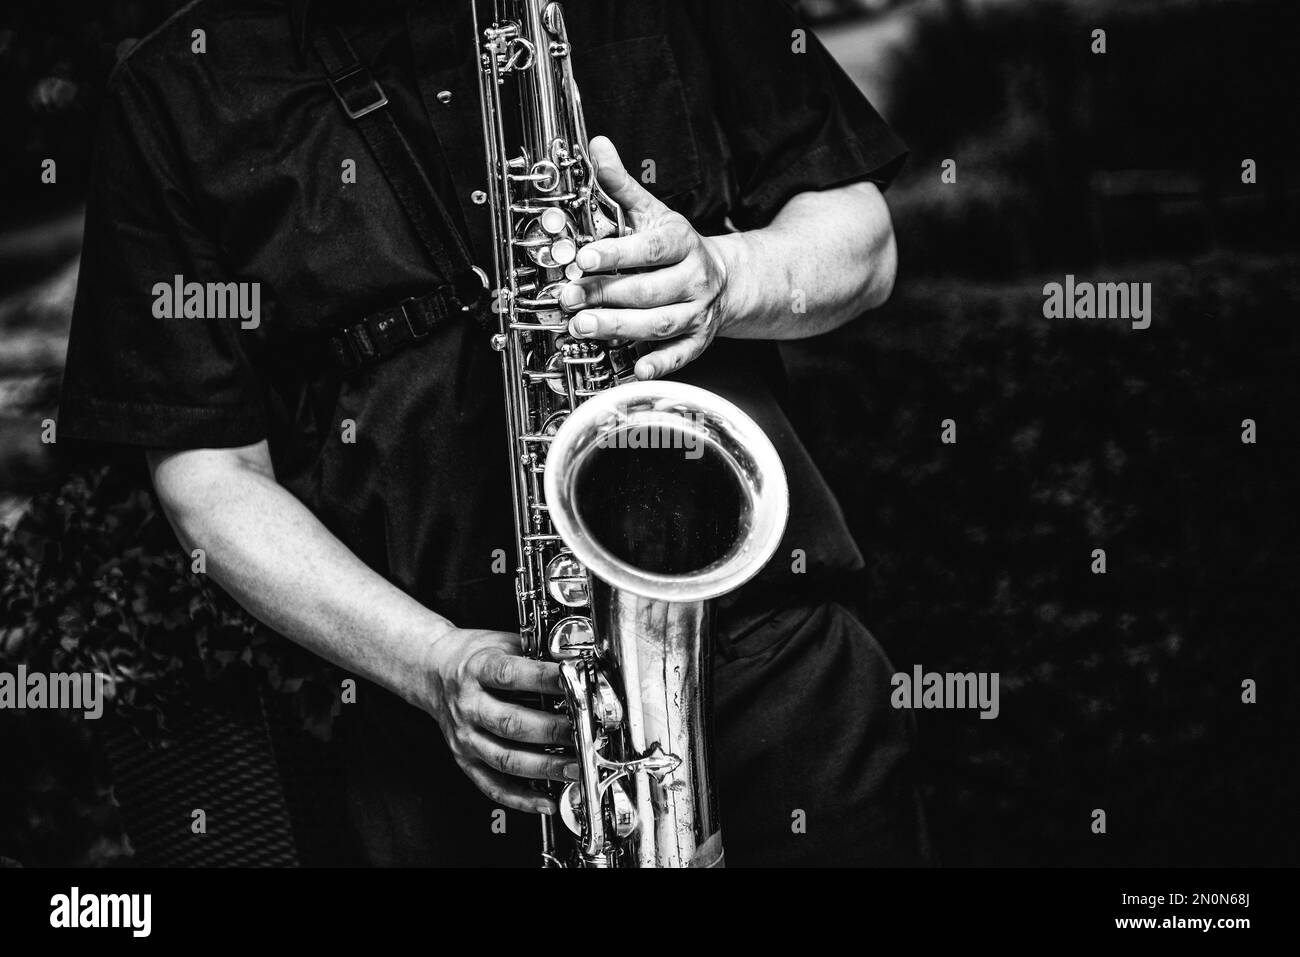 Prise de vue en niveaux de gris d'une personne jouant du saxophone Banque D'Images